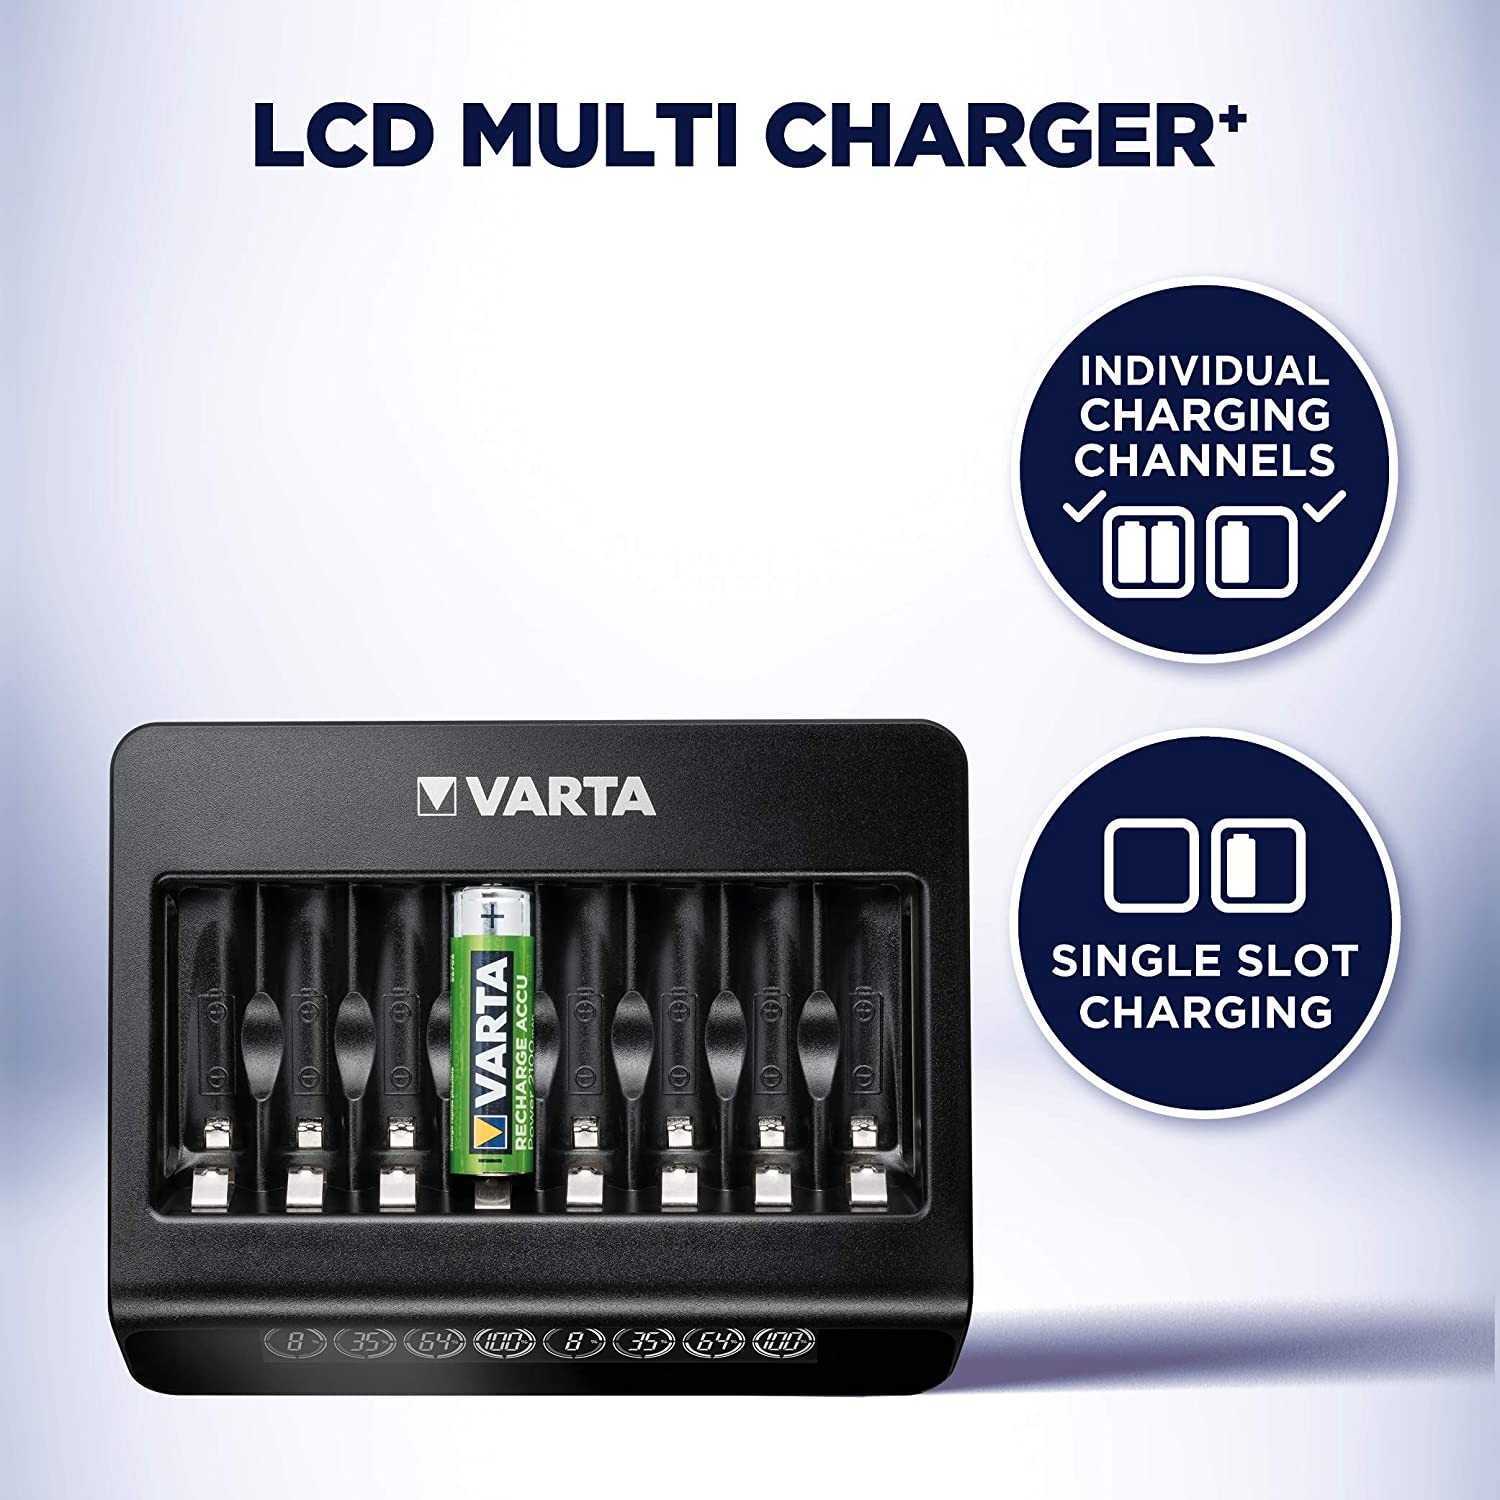 Зарядное устройство Varta LCD Multi Charger Plus (57681101401) характеристики - фотография 7